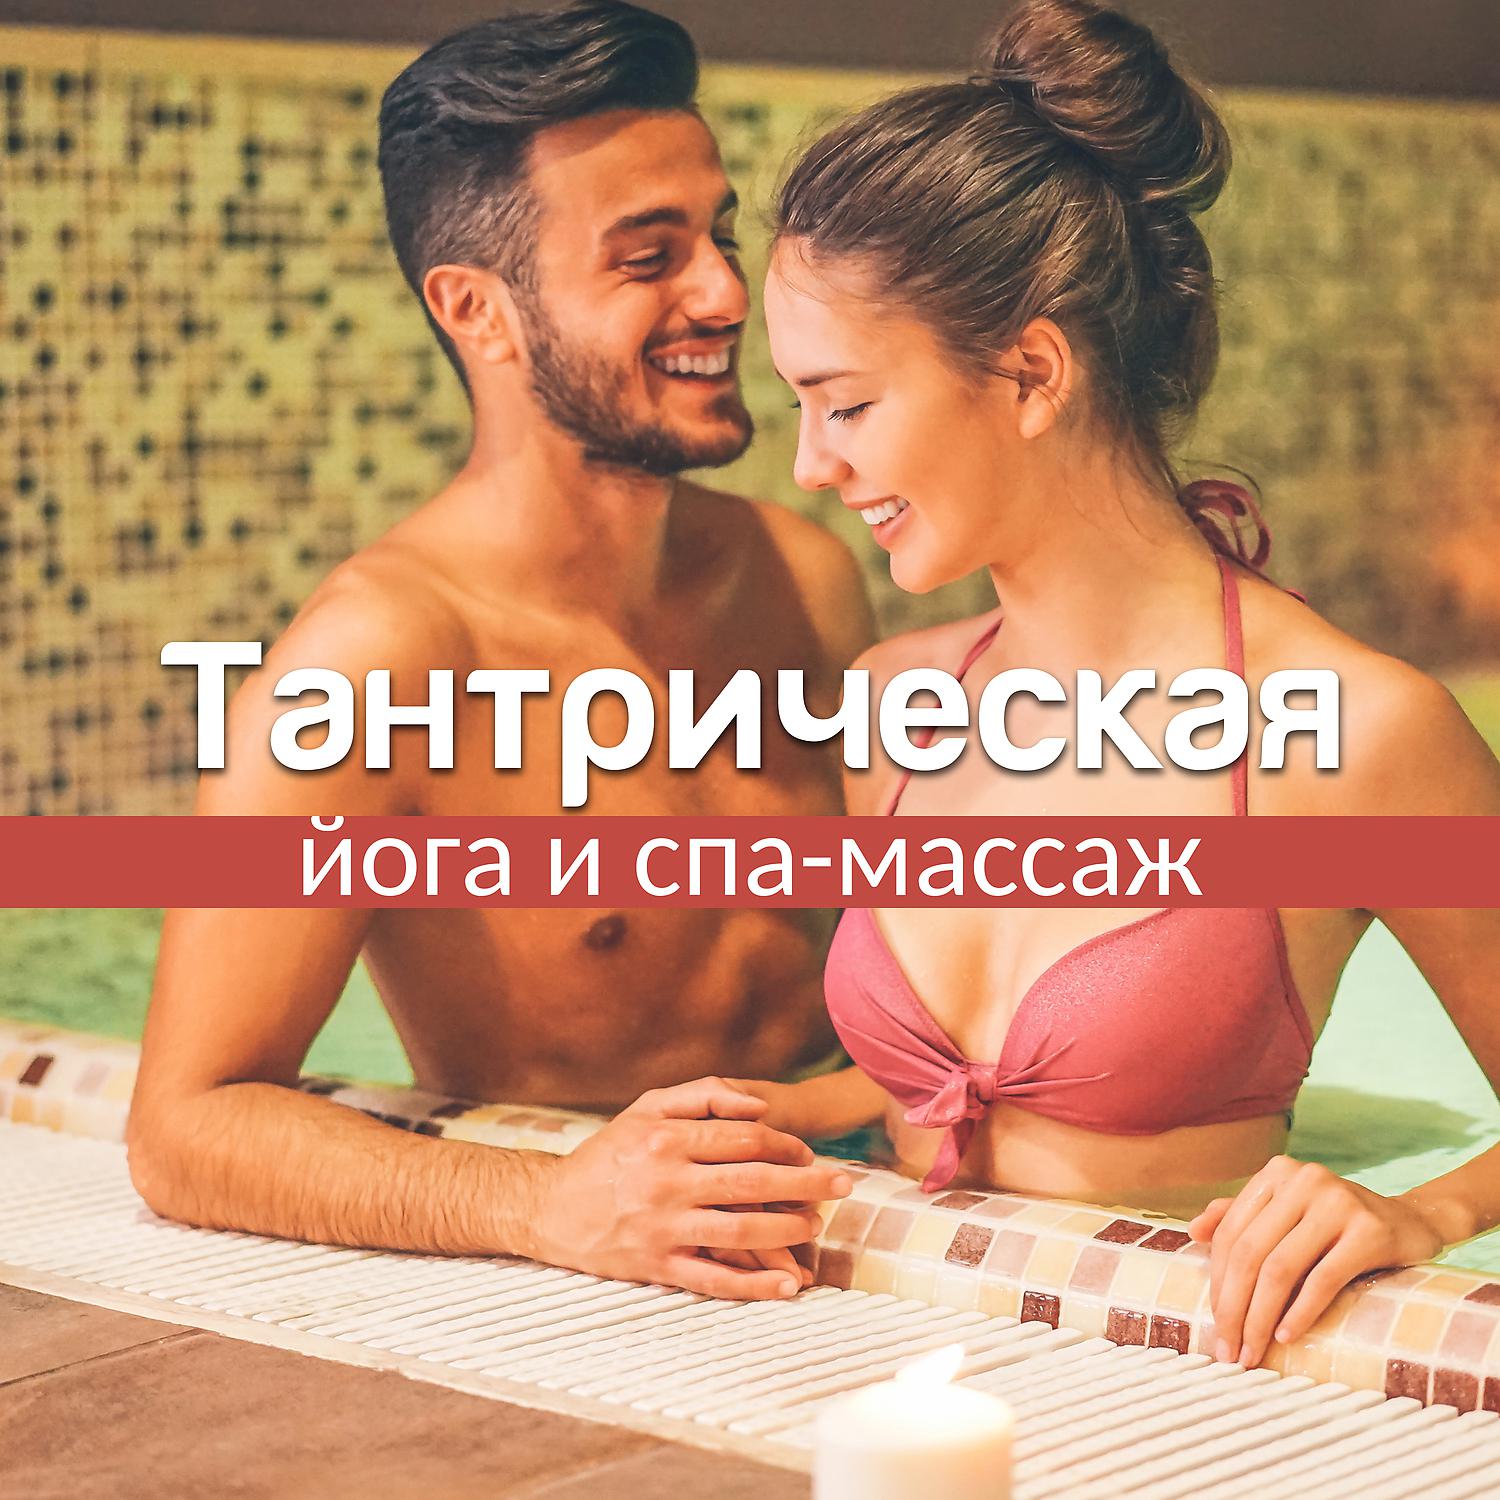 Эротическая музыка - song and lyrics by Музыка В Машину | Spotify